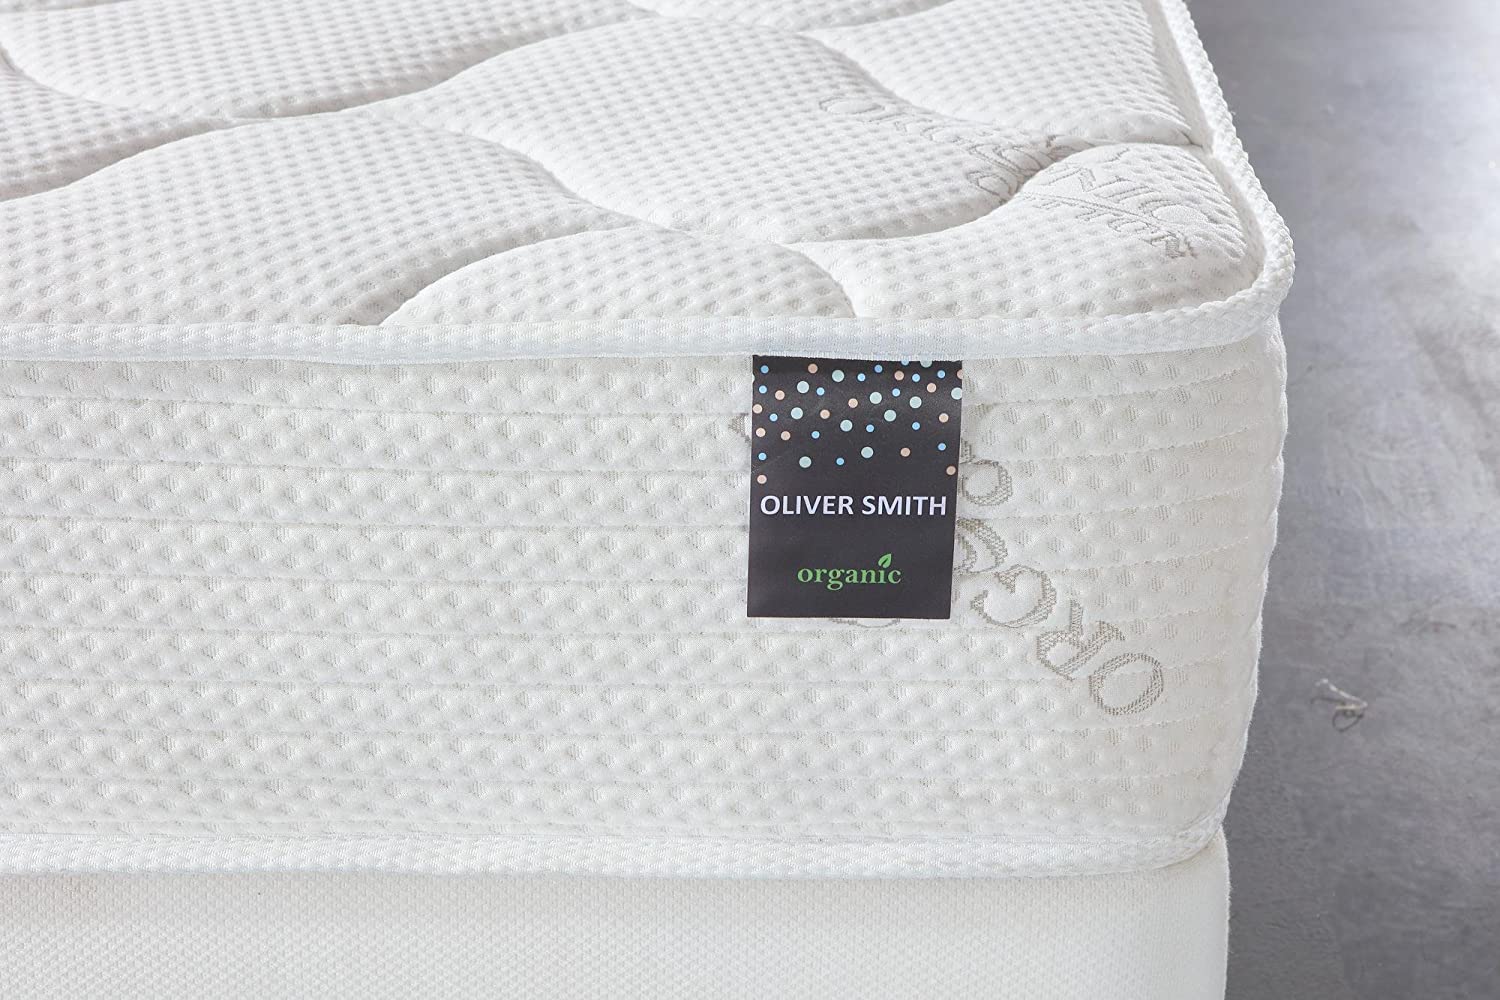 Organic Cotton Mattress, 10 Inch Comfort Firm Sleep Cool Memory Foam & Pocket Spring Mattress, Green Foam Certified